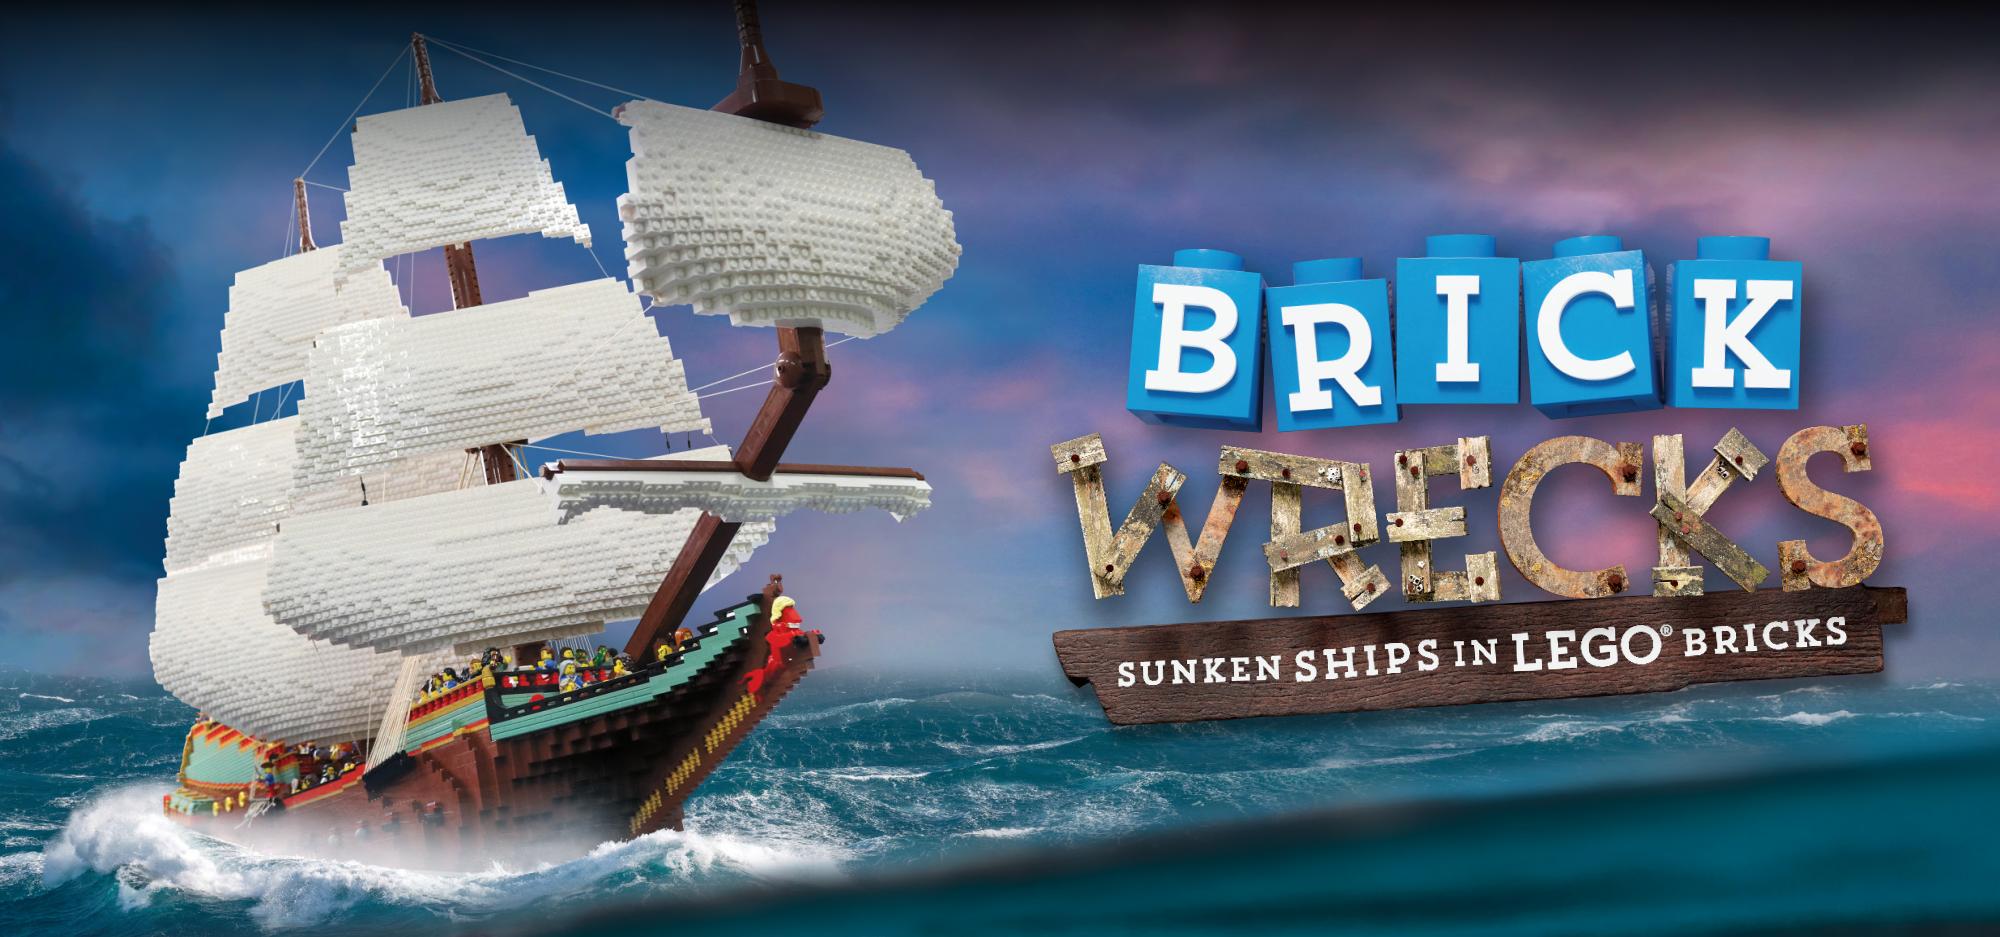 Brickwrecks: Sunken Ships in LEGO® Bricks?>